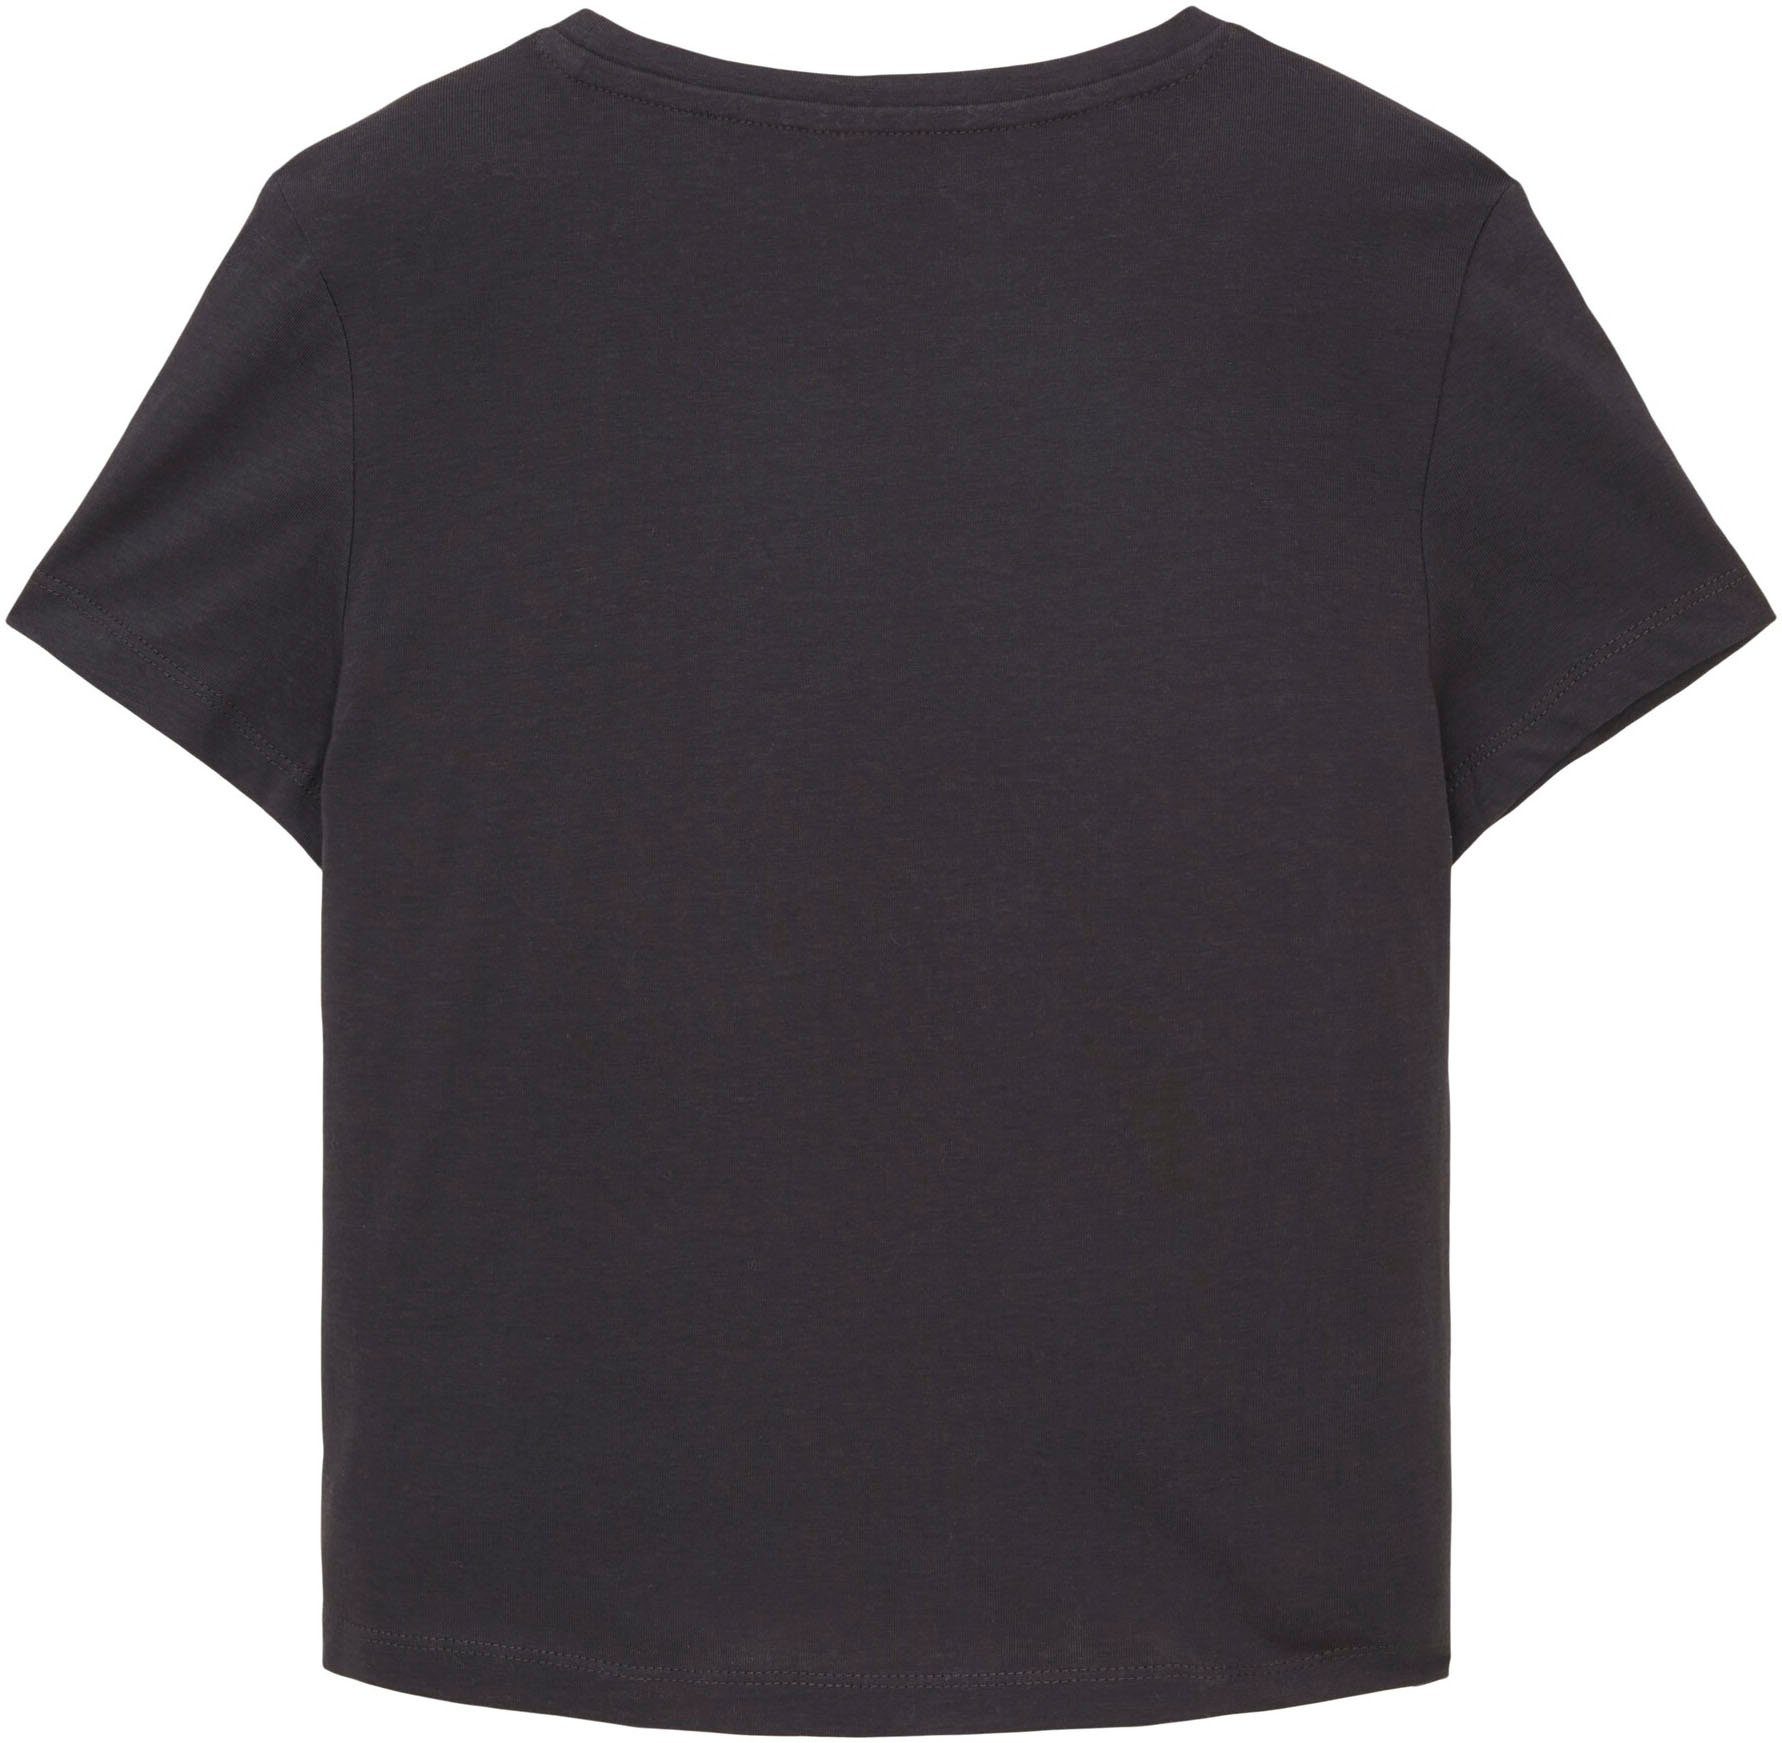 Grau TAILOR TOM T-Shirt mit Motiven sommerlichen